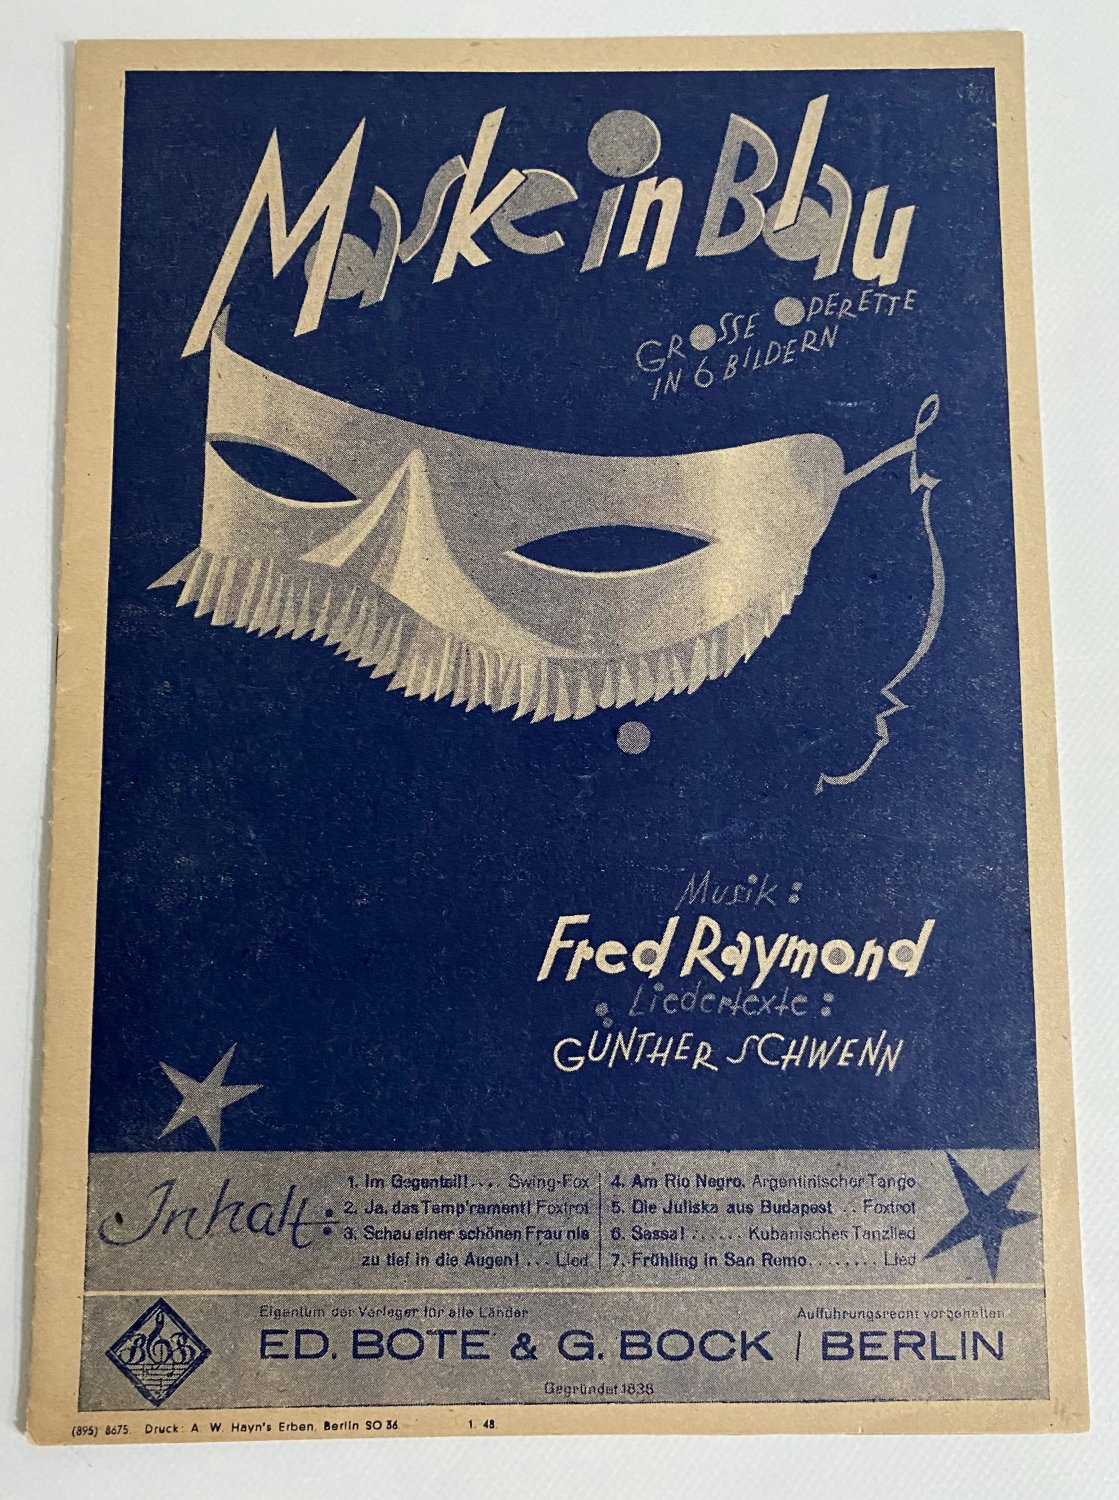 Maske in Blau ist eine Große Operette“ (Raymund Fred / Schwenn Günther / Palm – Buch antiquarisch kaufen – A02rkIiL01ZZV